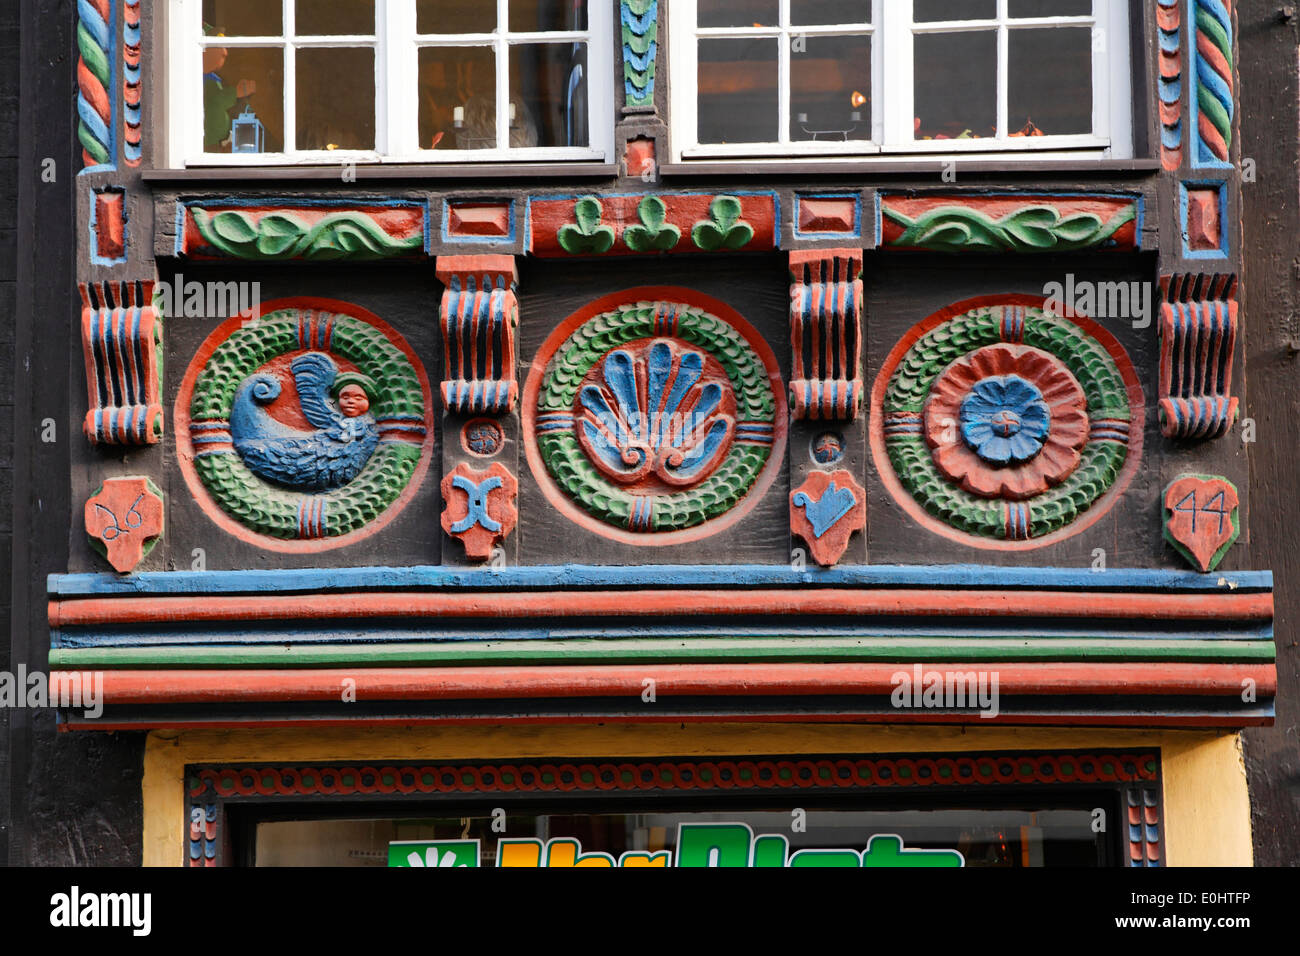 L'architecture de la vieille ville de Bad Münstereifel bâtiments bâtiment à colombages Allemagne half-timbered building maison maisons histor Banque D'Images